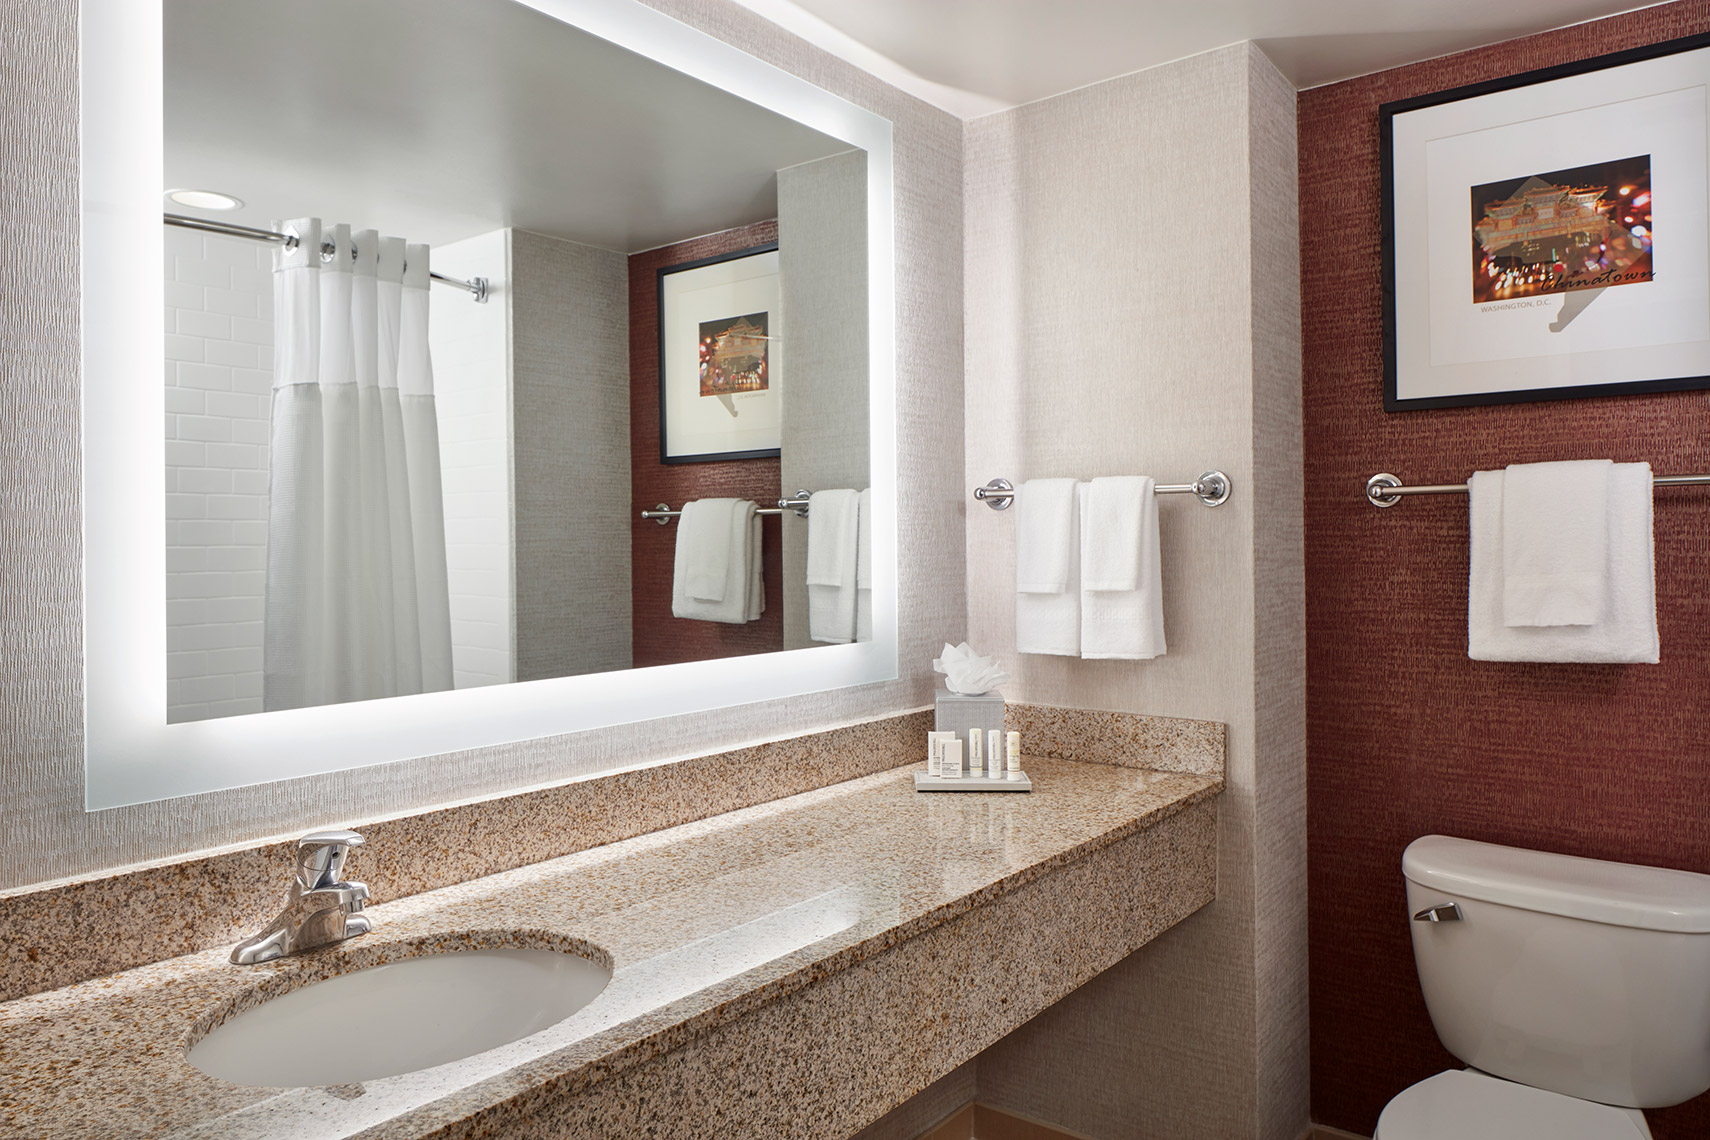 Fairfield Inn & Suites Washington, DC/Downtown - Bathroom